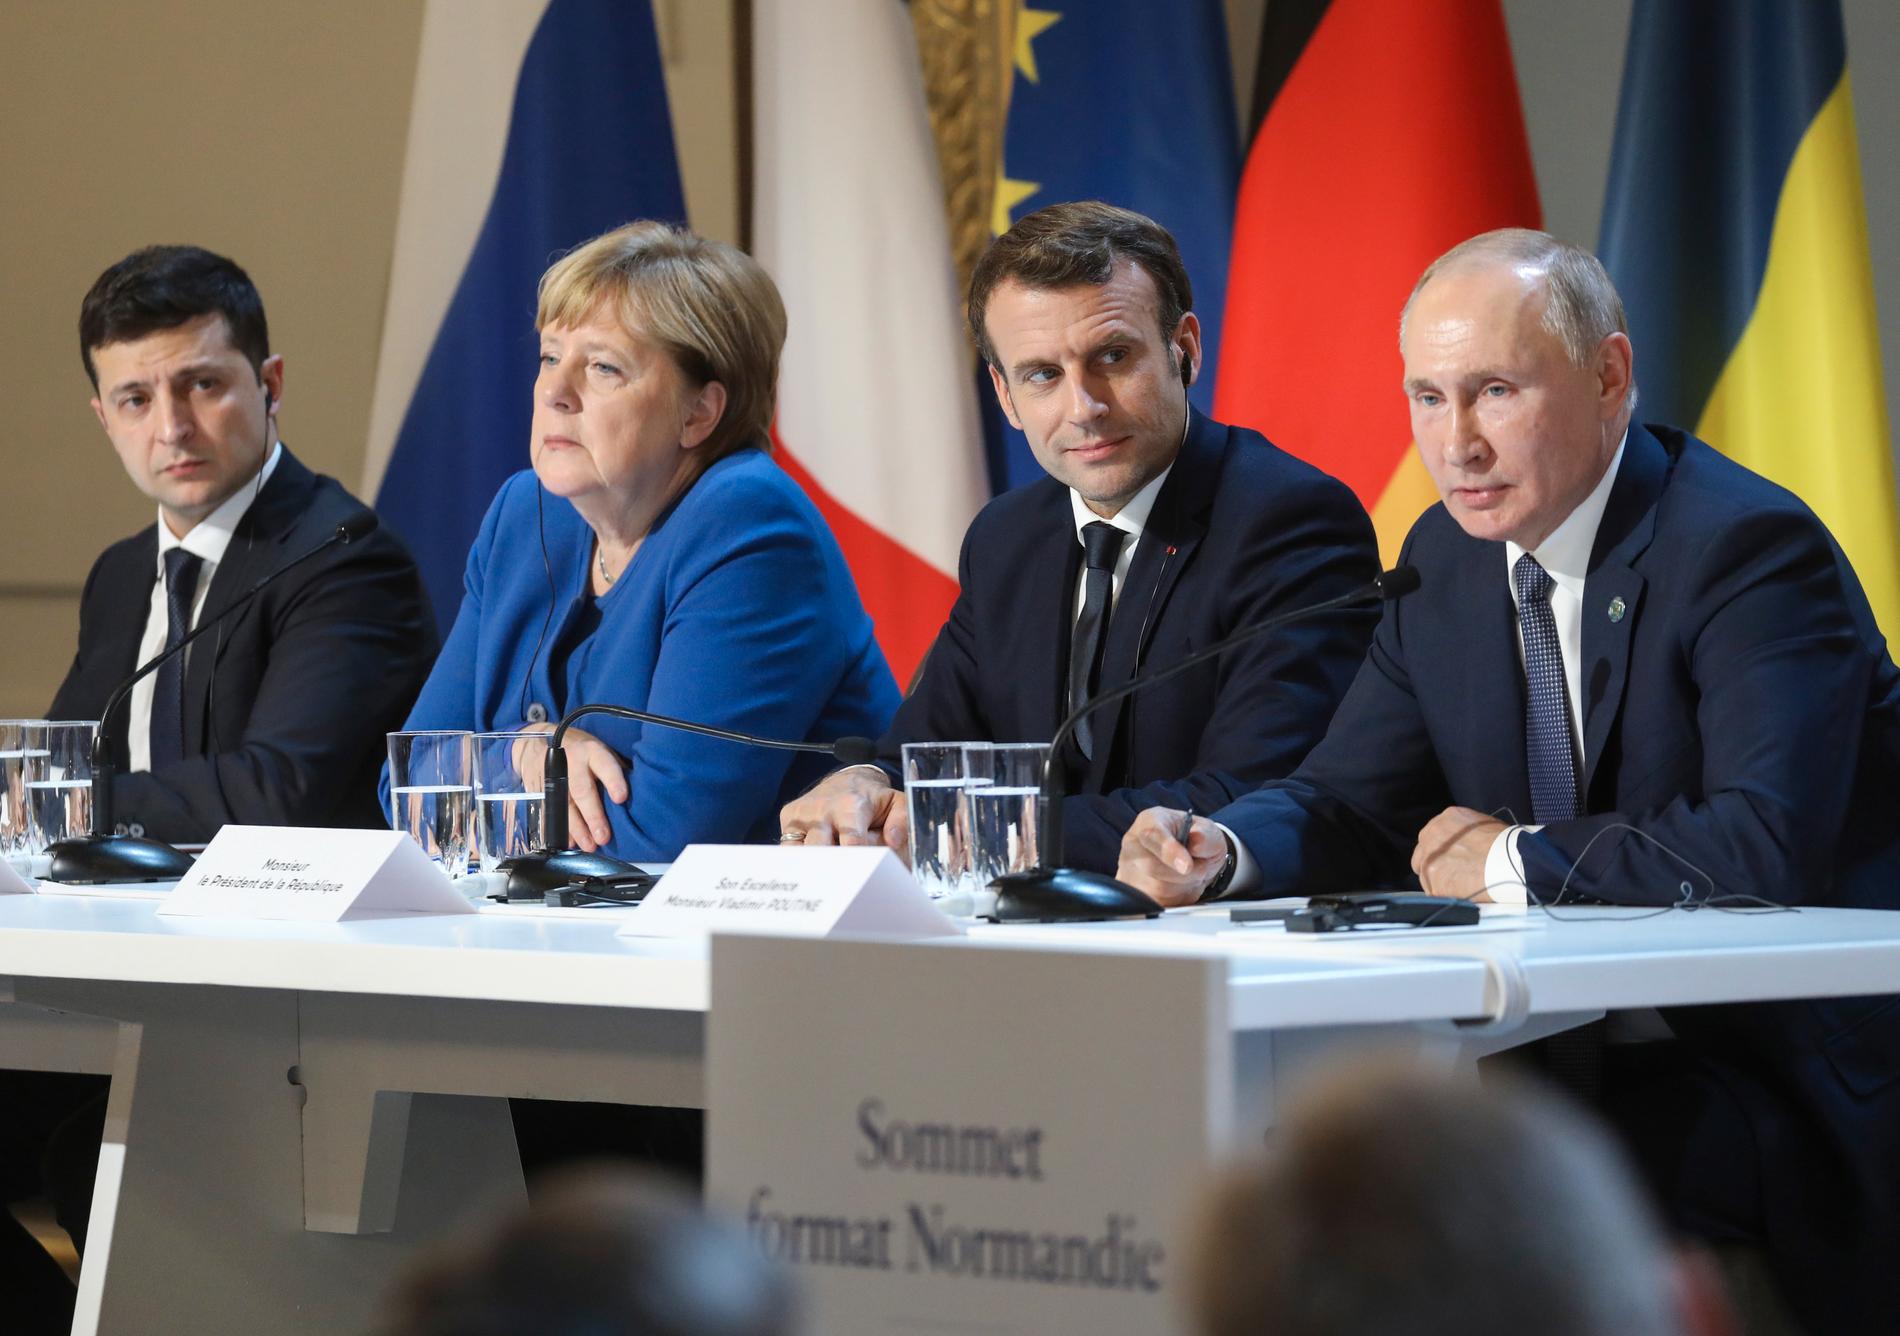 Toppmötet inom Normandieformatet i Paris i december. Från vänster, Volodymyr Zelenskyj, Tysklands förbundskansler Angela Merkel, Frankrikes och Rysslands presidenter Emmanuel Macron och Vladimir Putin.